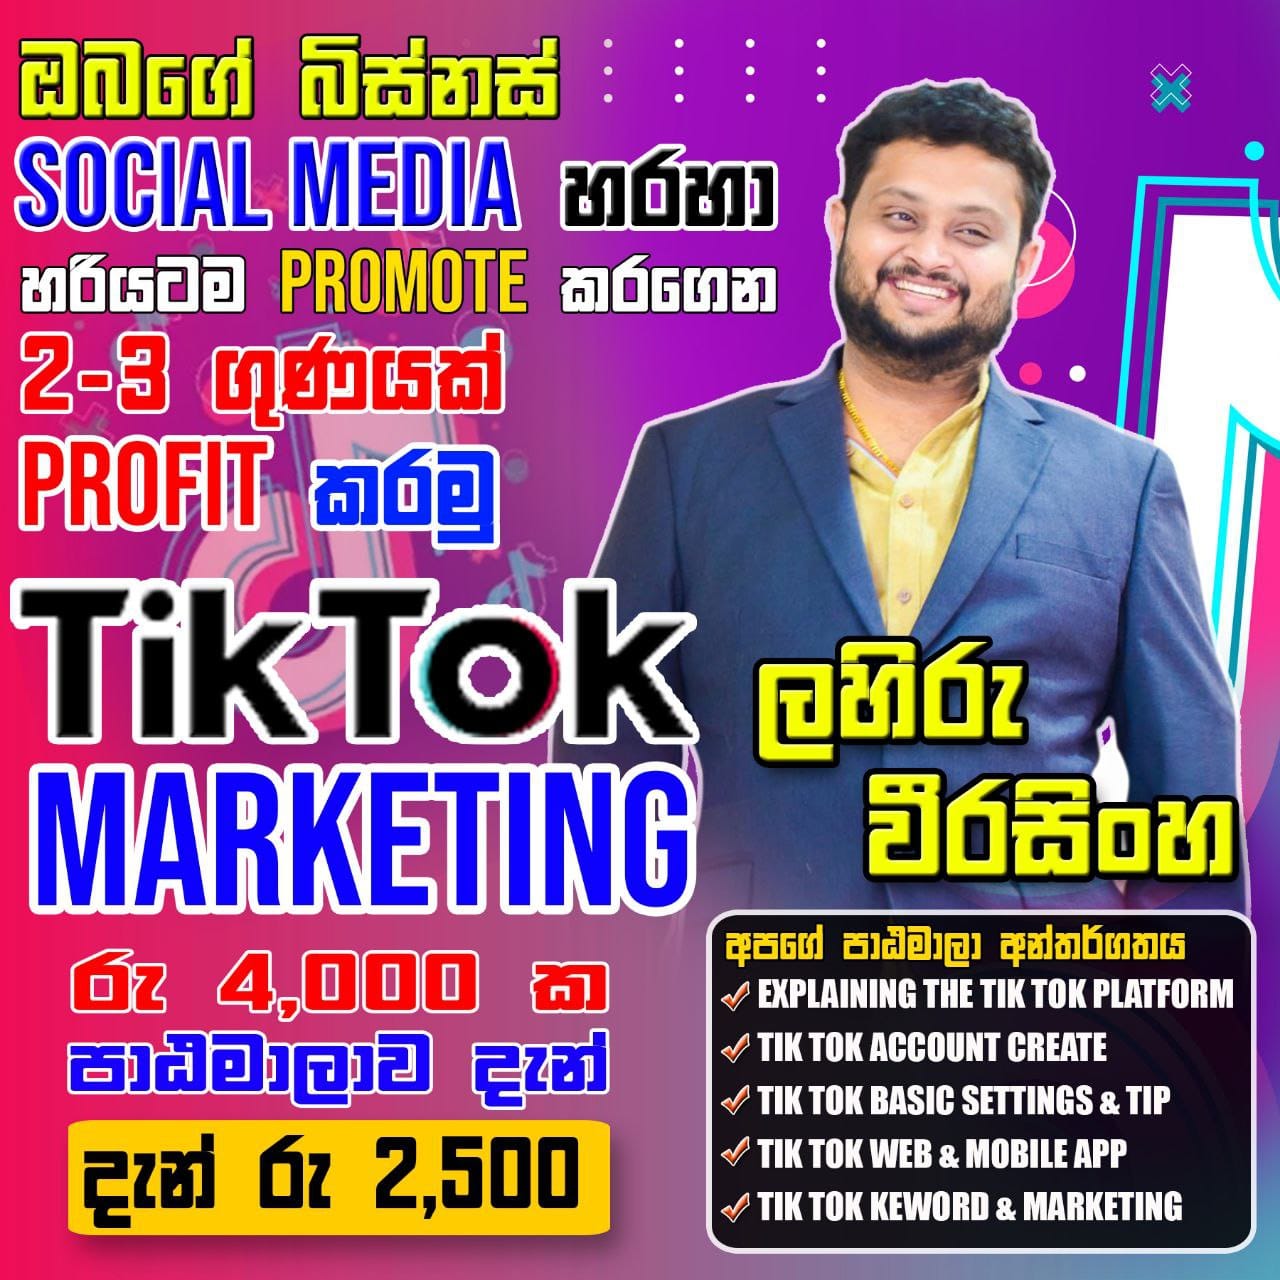 Tiktok Marketing Course